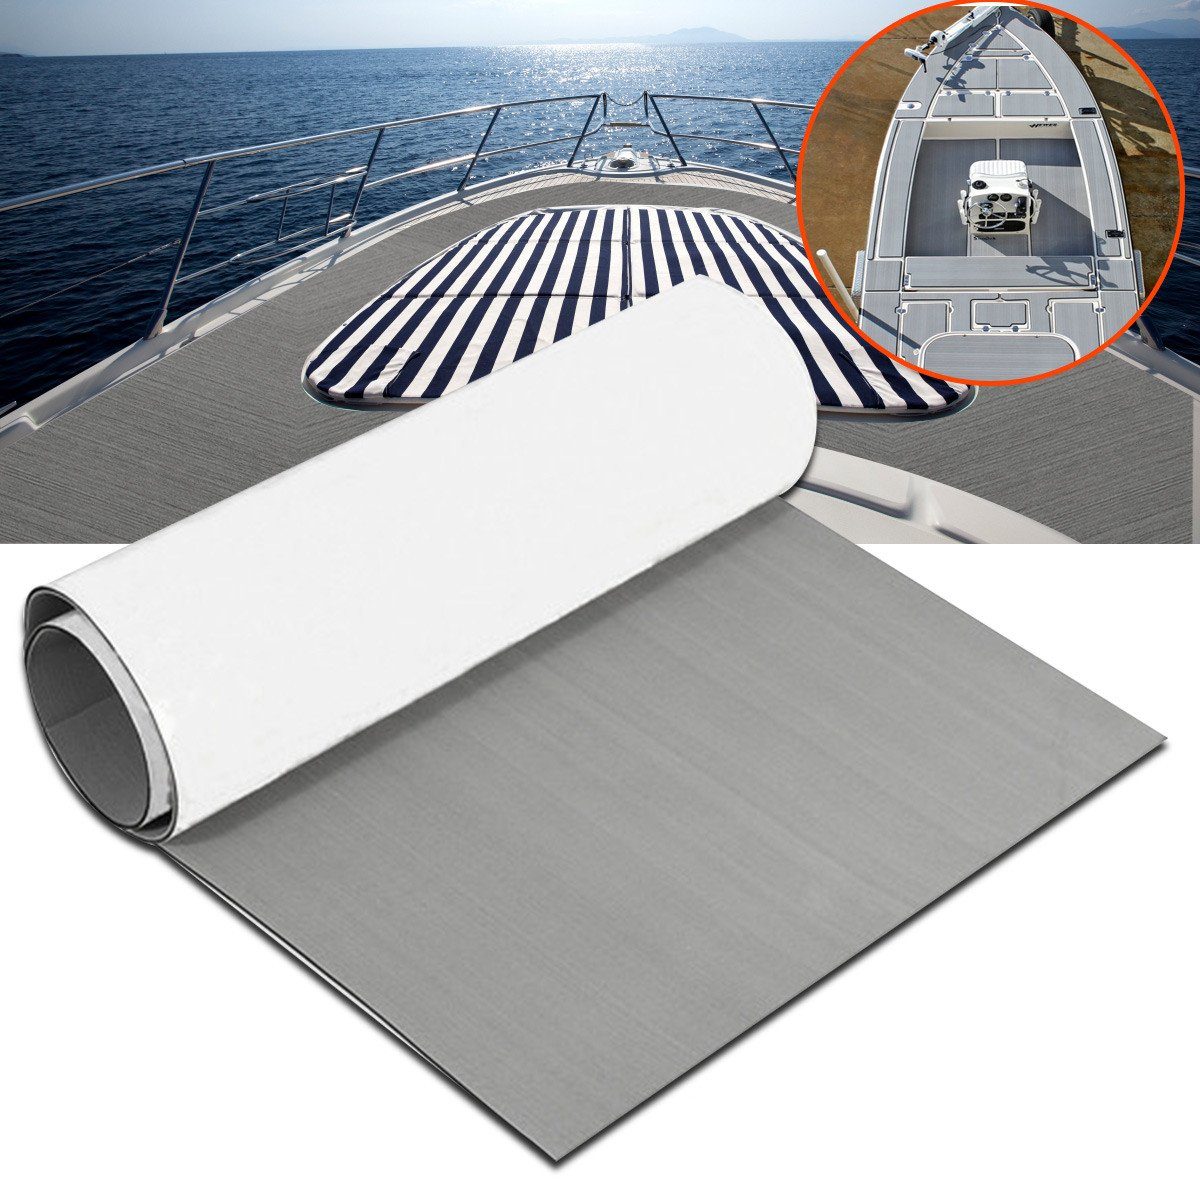 ELUTO Bodenmatte 580625, EVA Schaum Bootsboden Decke Selbstklebend Bodenmatte Bodenbelag Fußboden Matte 230X90cm, 5mm für Yacht Boot